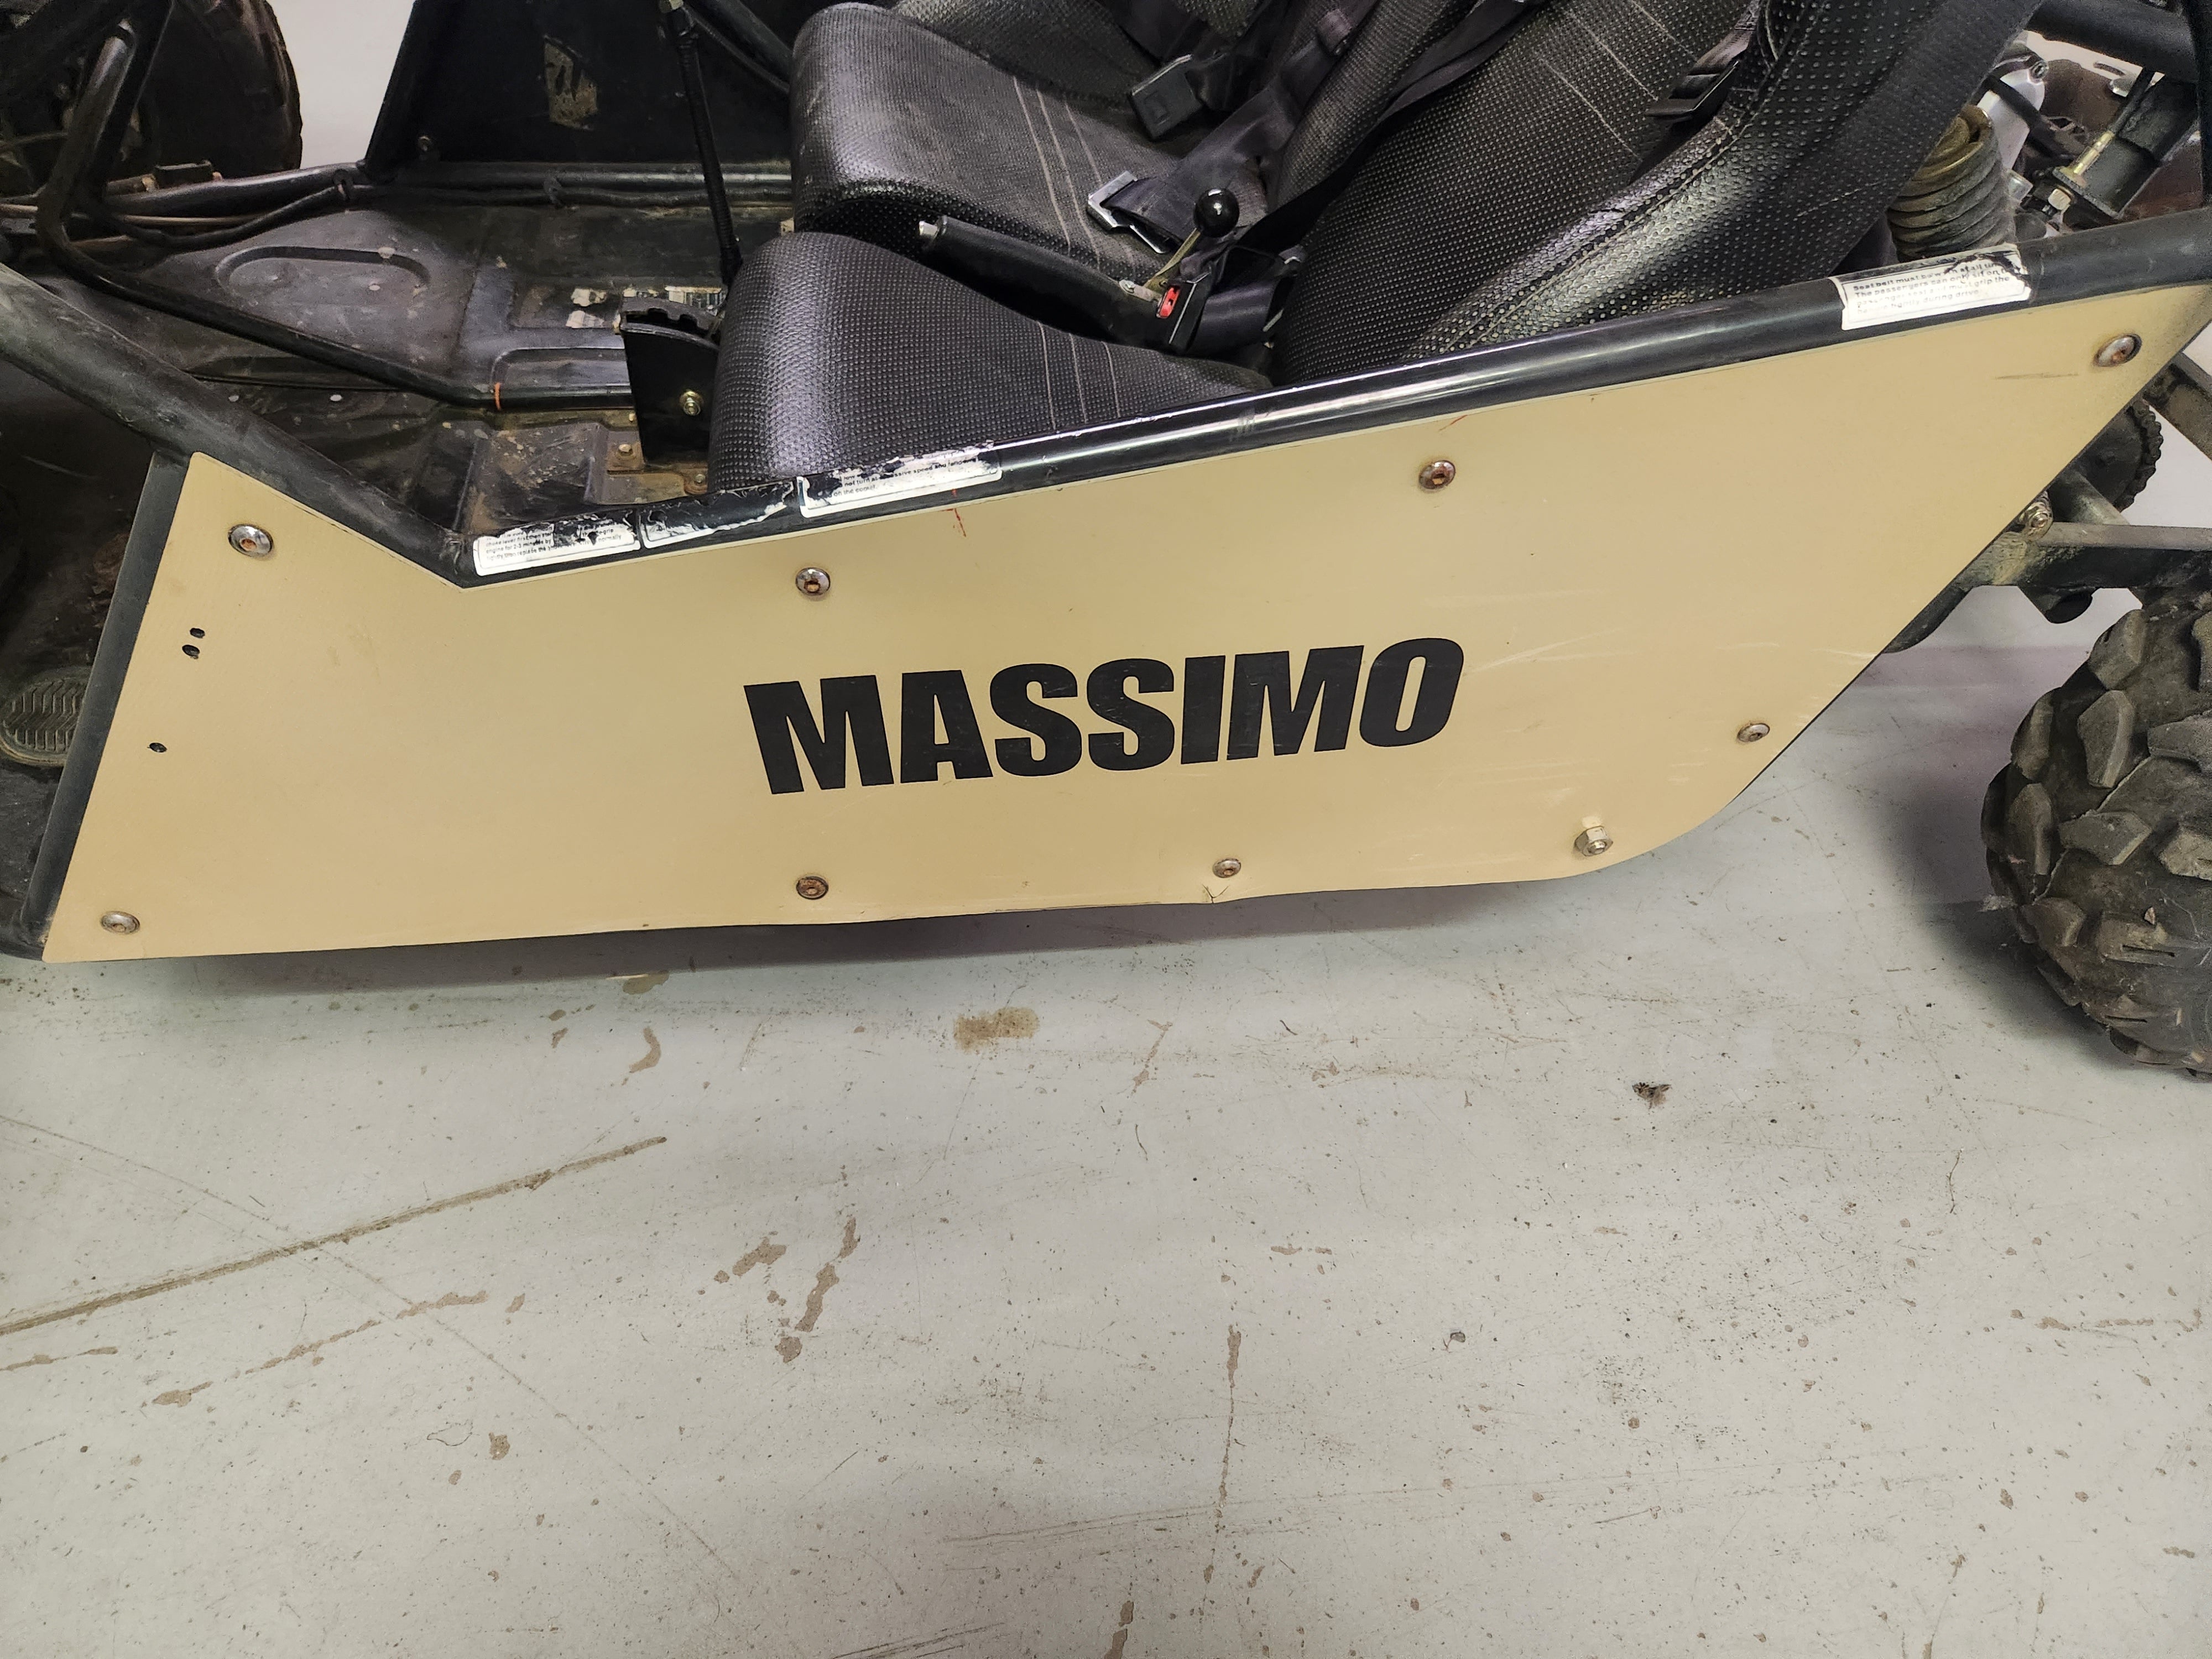 Massimo GKM 200 Go Kart